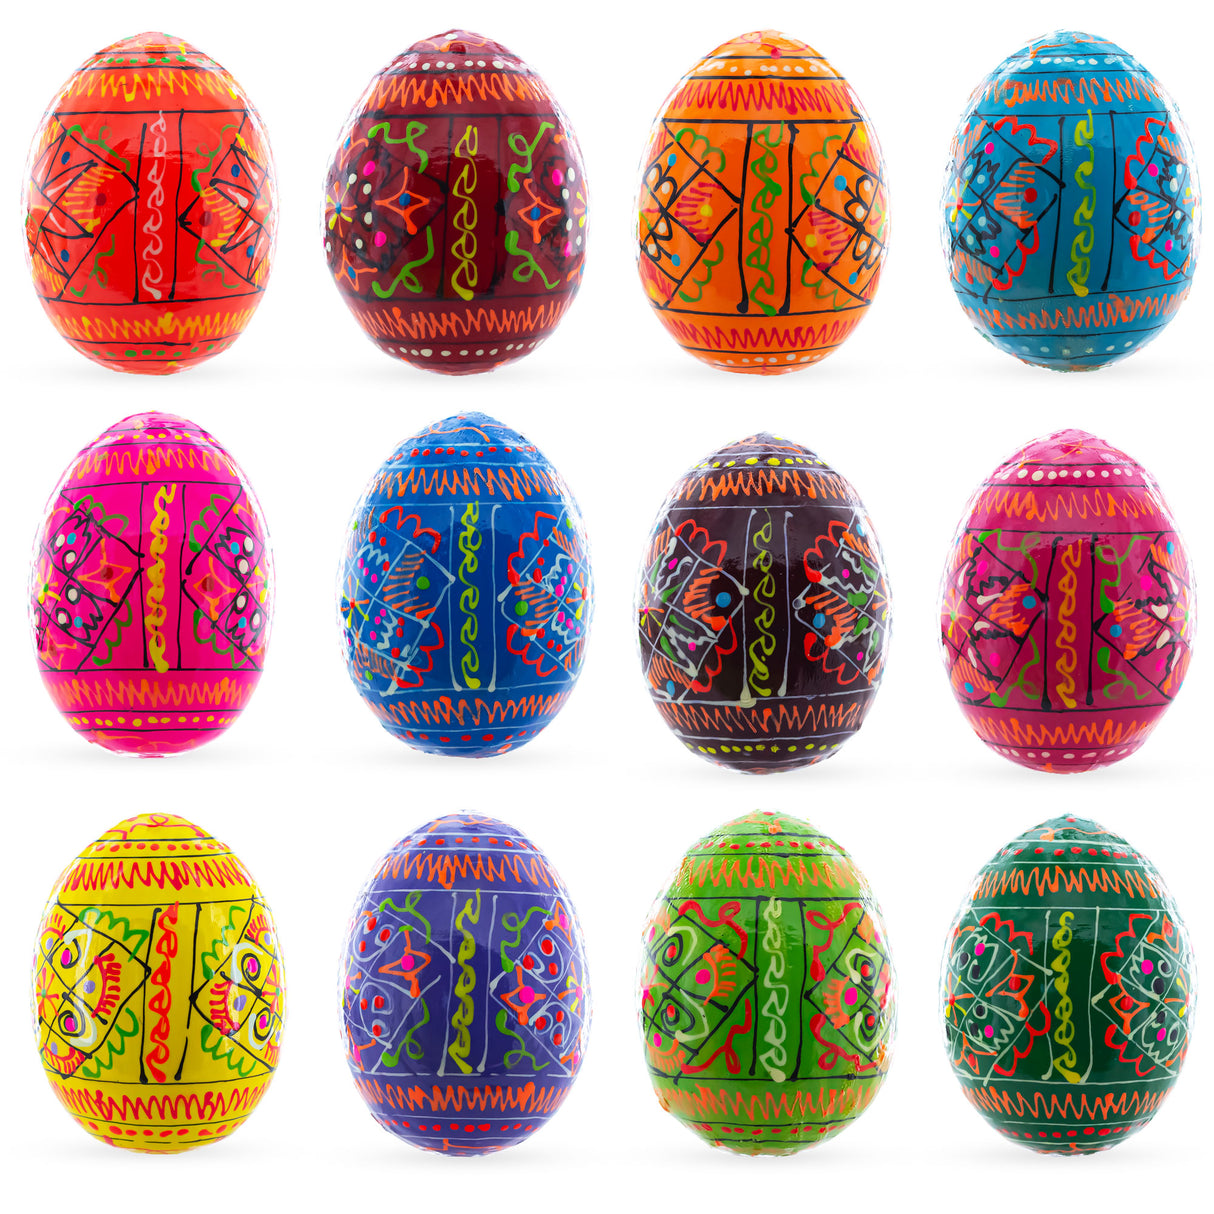 Buy Easter Eggs > Wooden > Set of 3+ by BestPysanky Online Gift Ship